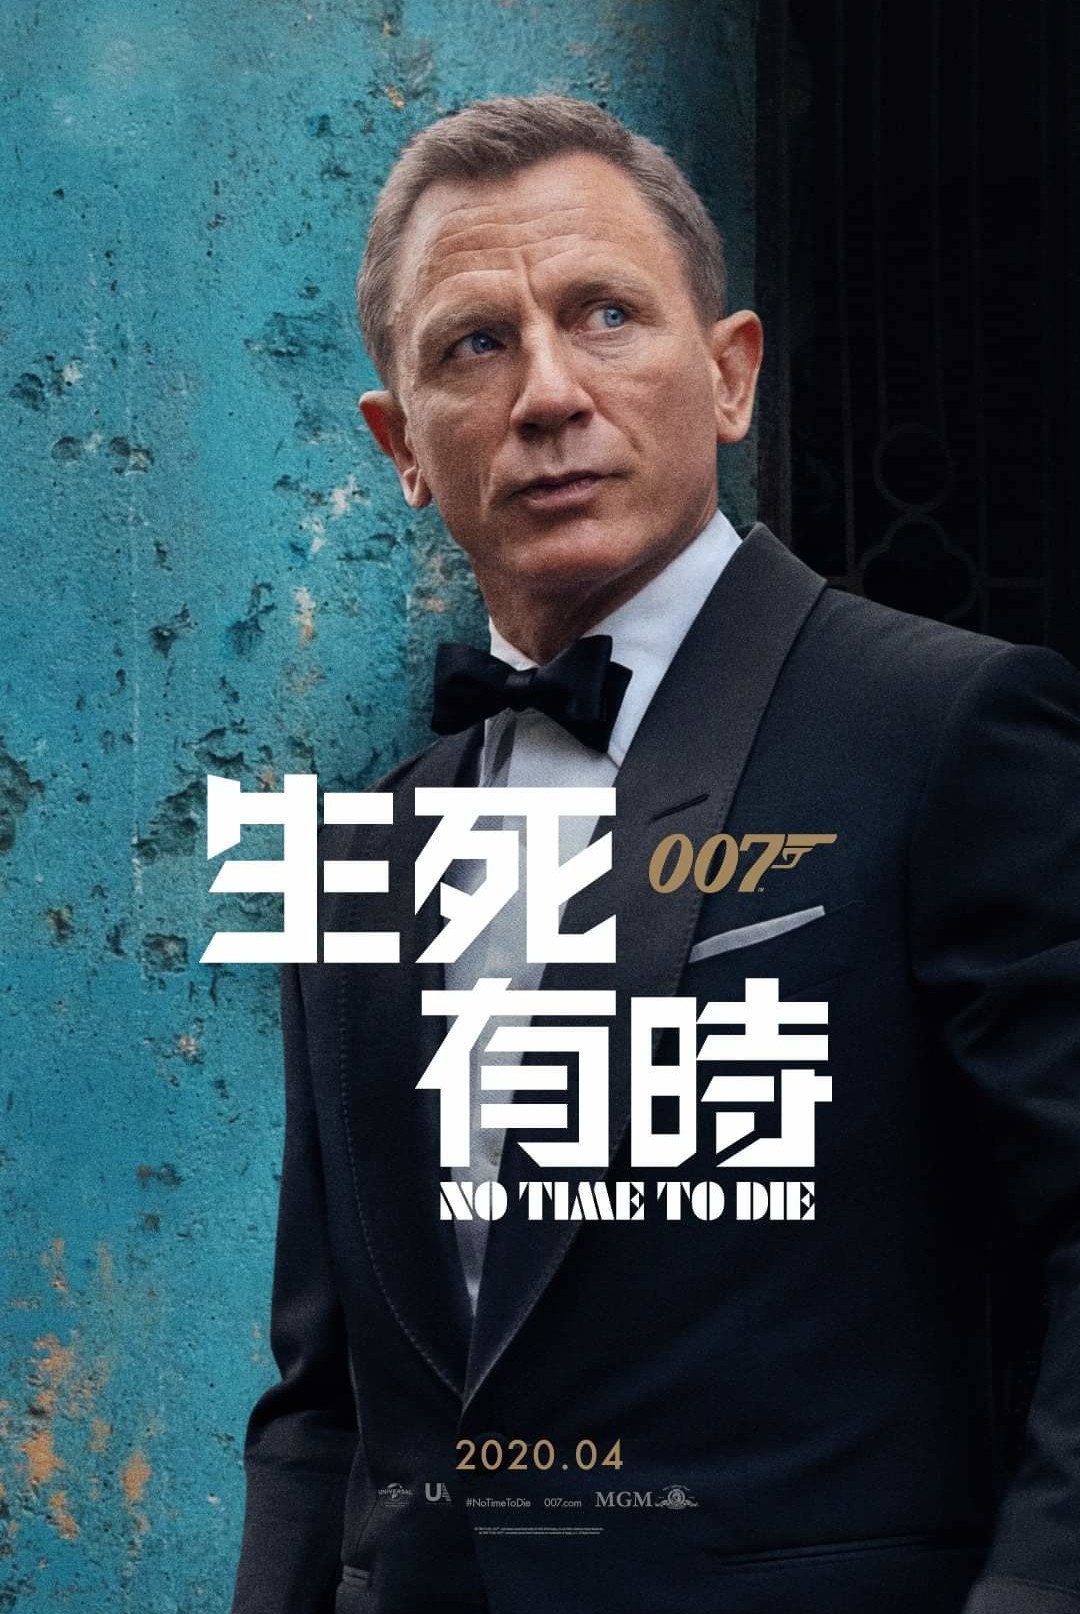 007：生死有時 (3D 4DX版)電影圖片 - poster_1572398847.jpg